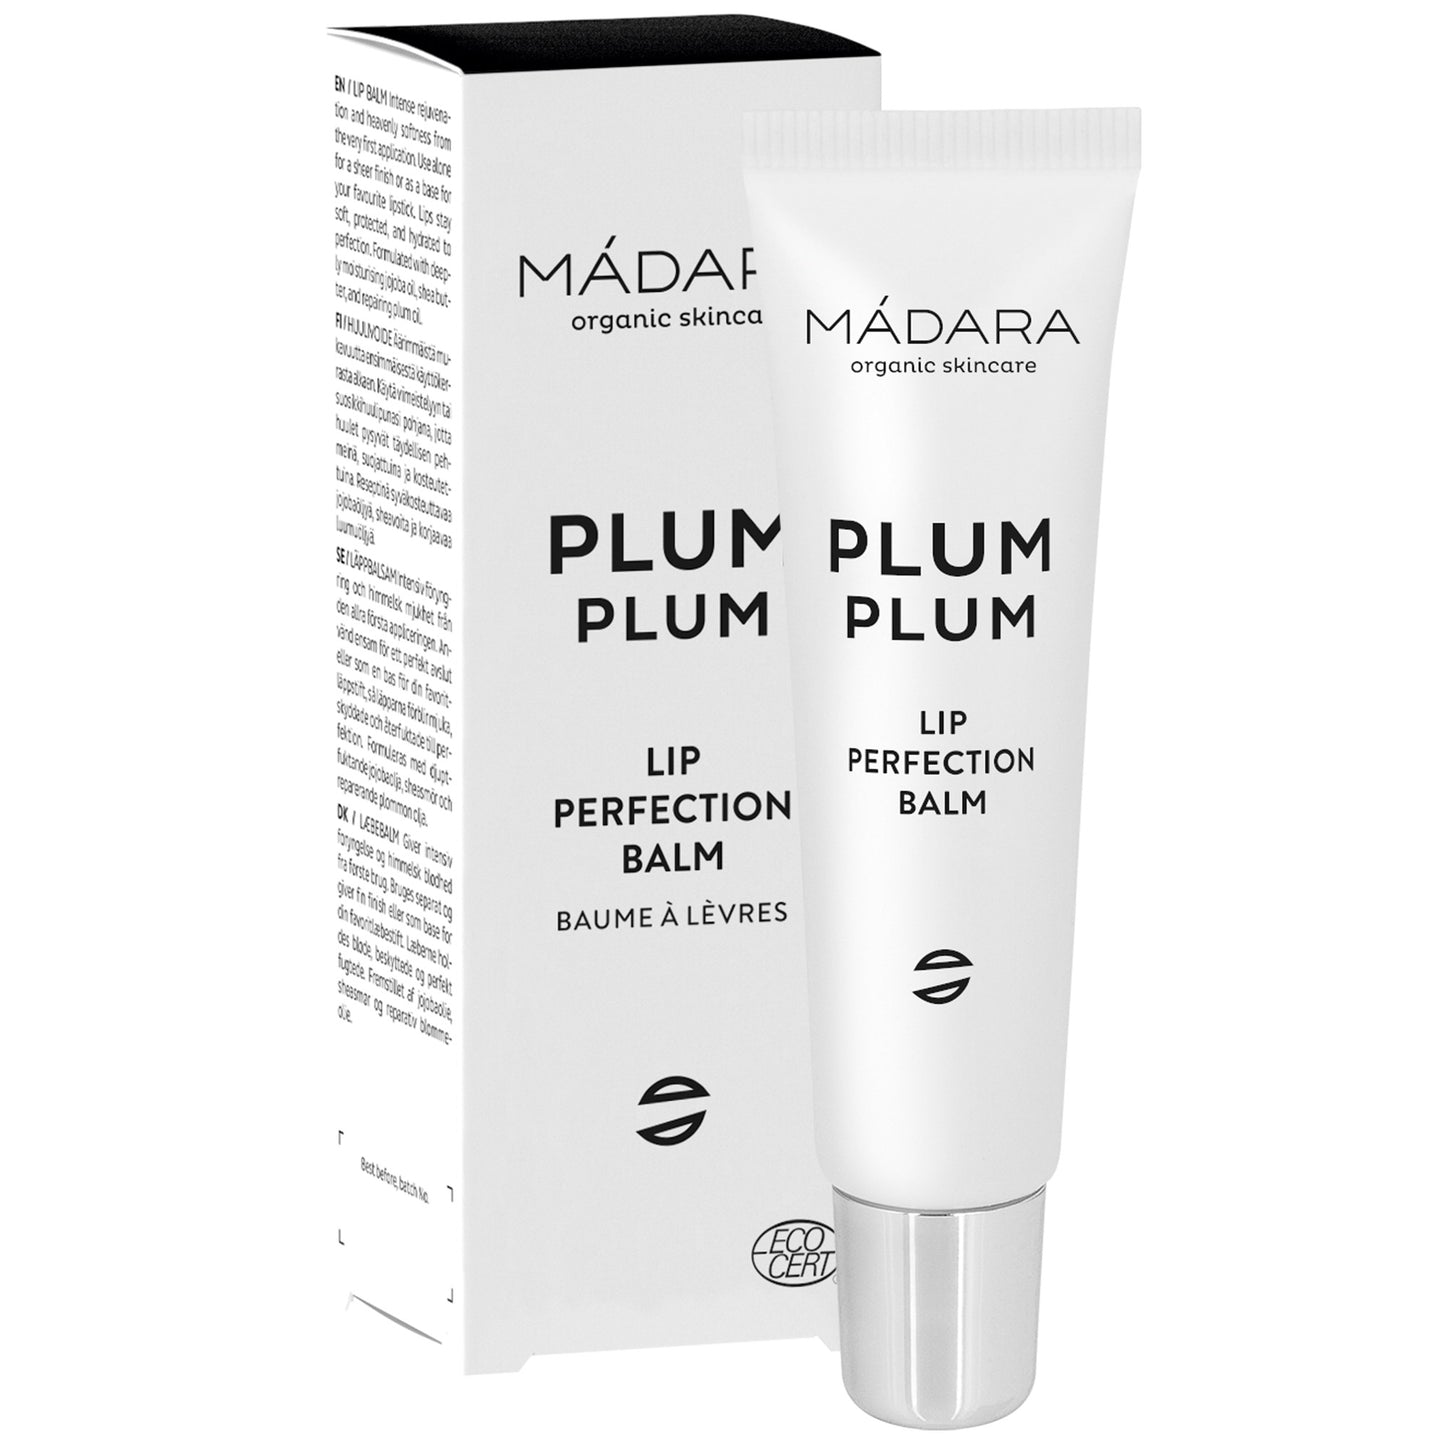 MADARA - Plum Plum lip balm 15ml